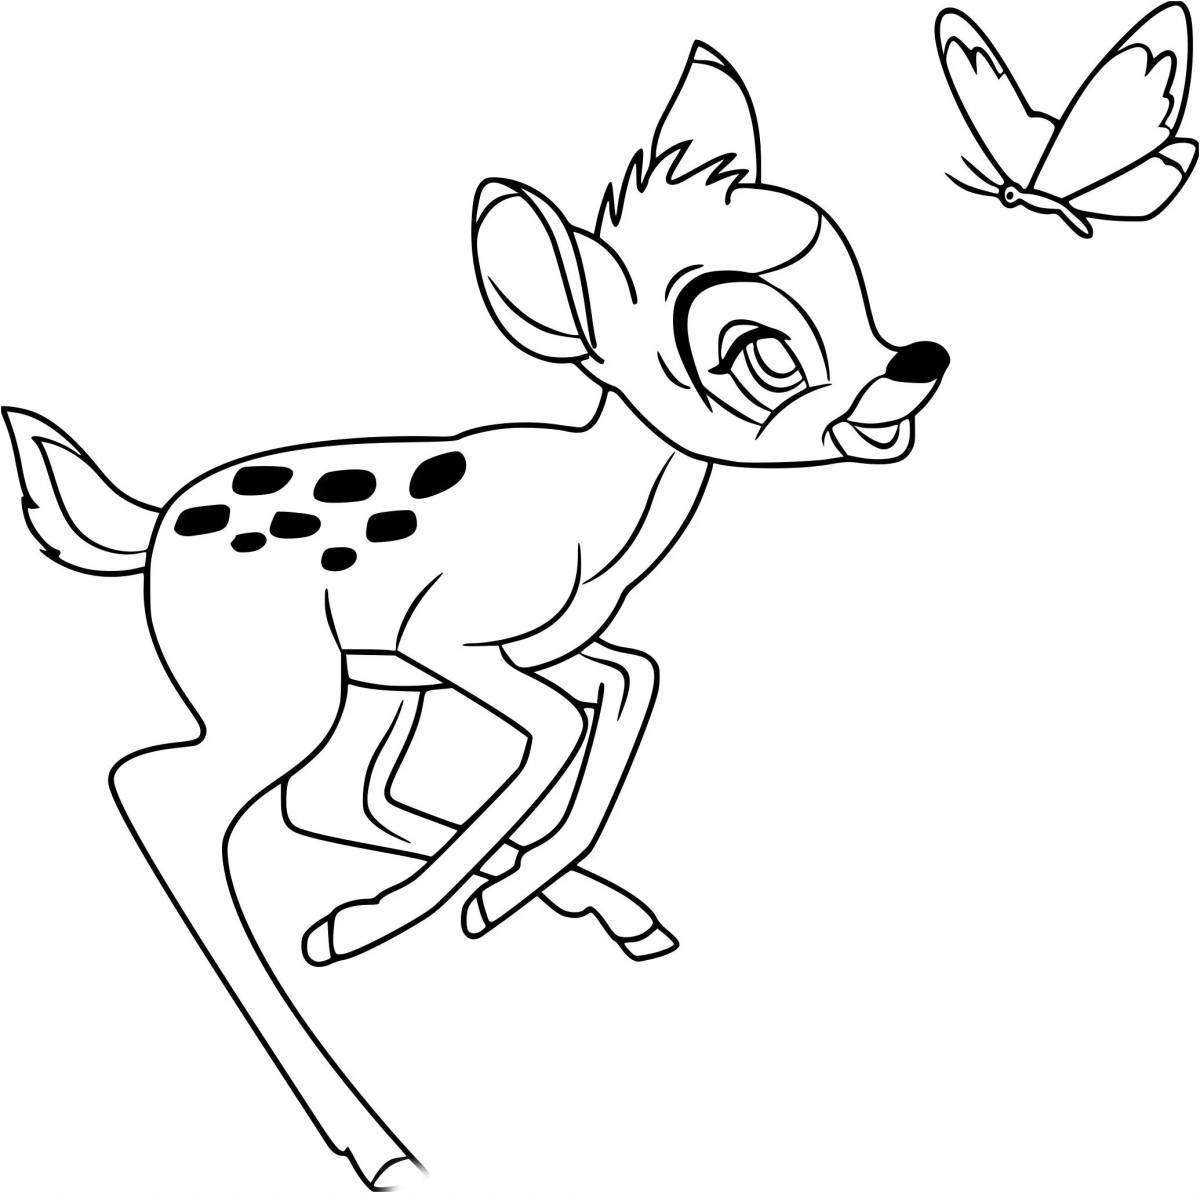 Children coloring deer